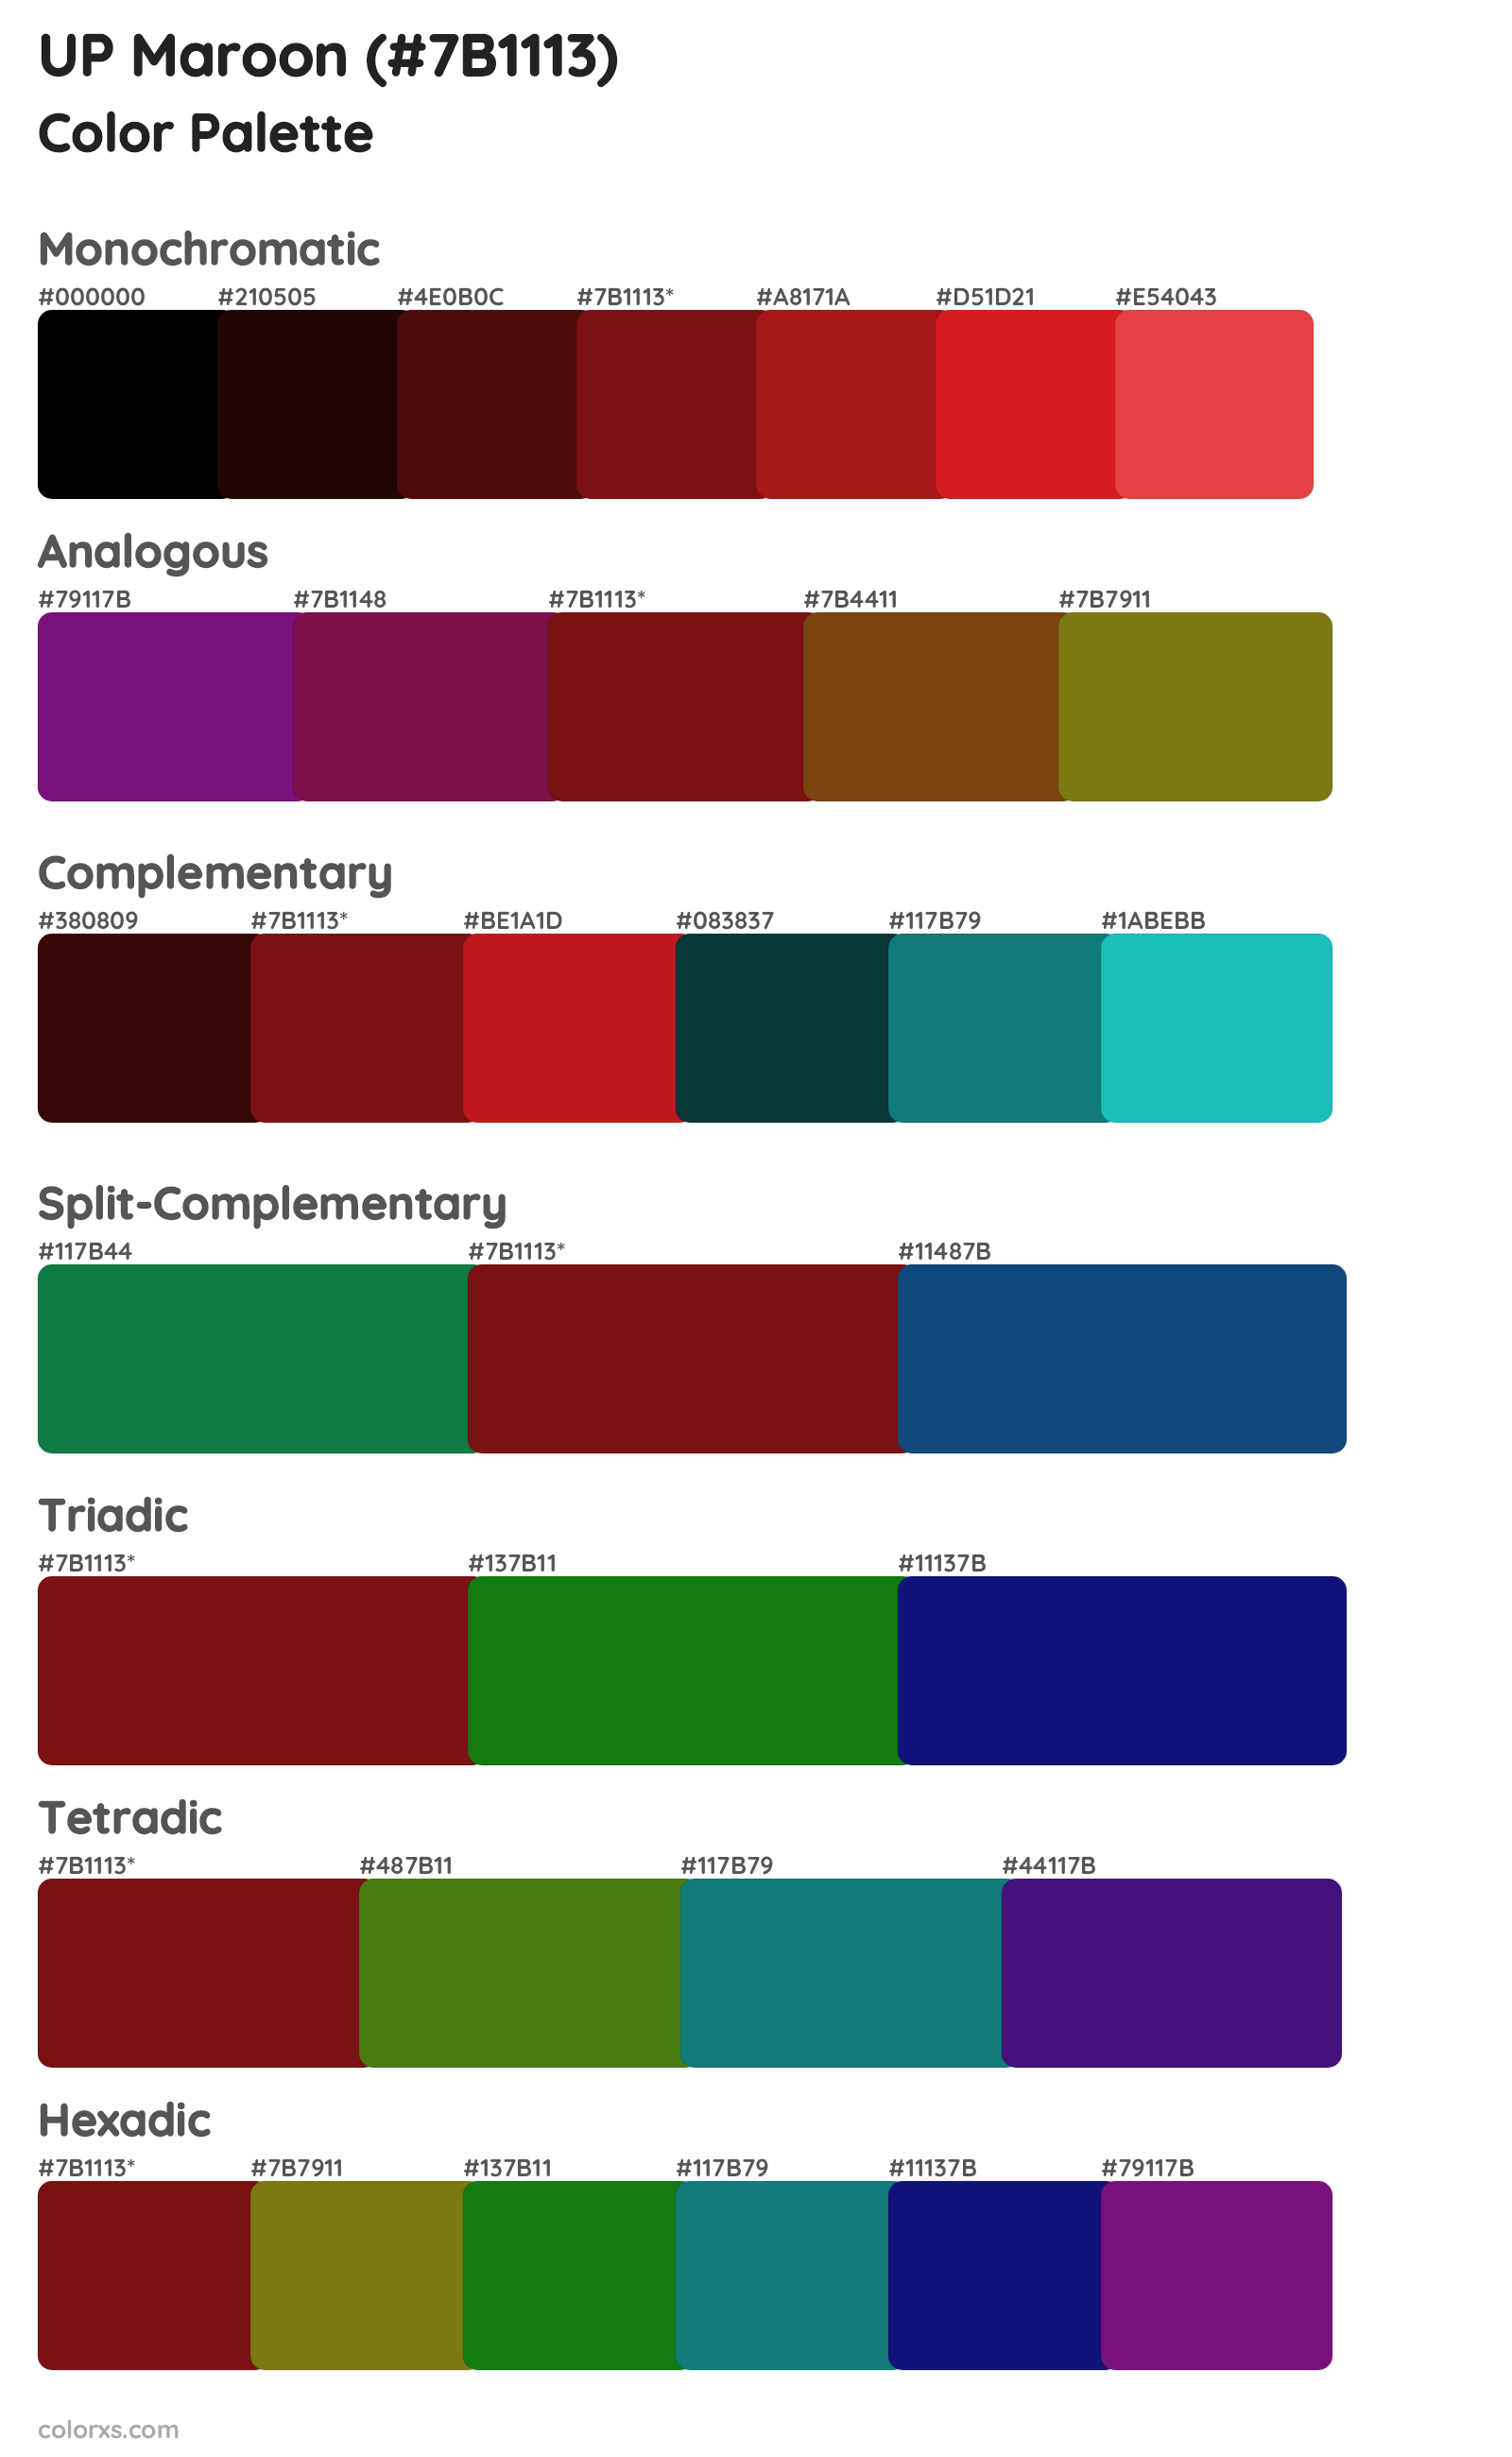 UP Maroon Color Scheme Palettes